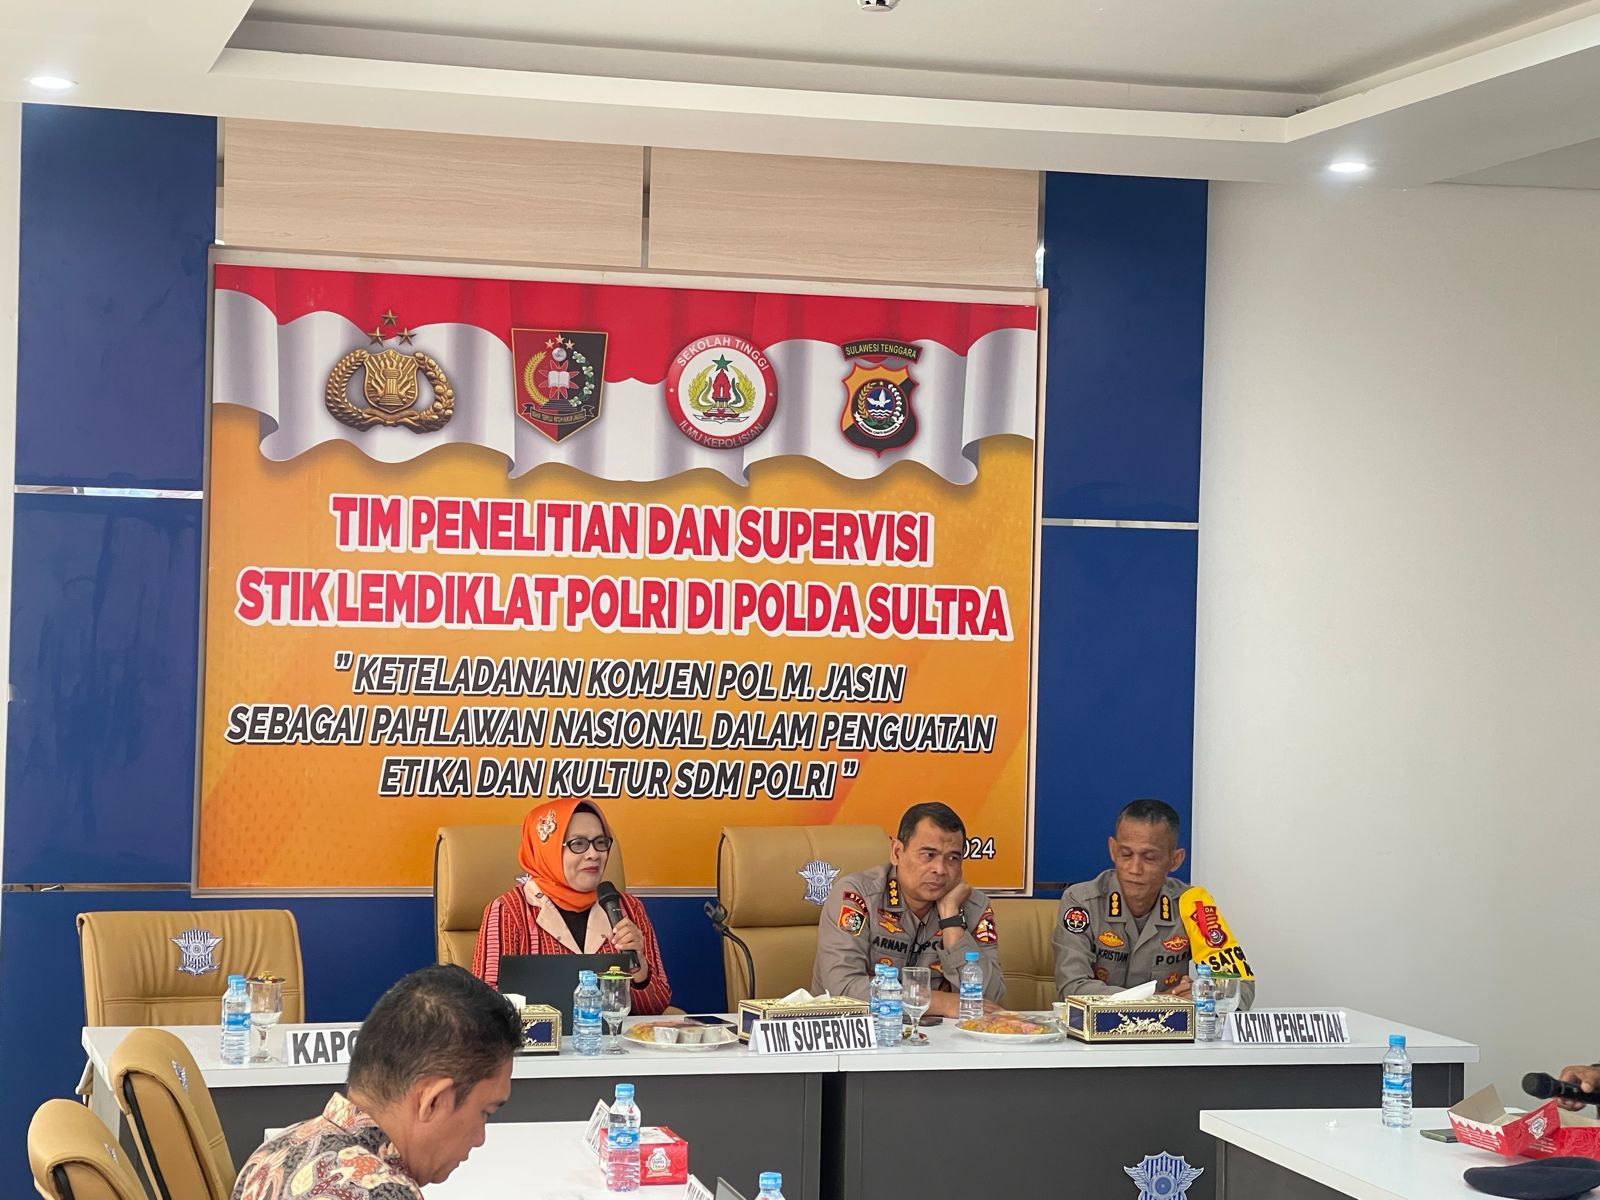 Tim Penelitian dan Supervisi STIK Lemdiklat Polri di Polda Sultra